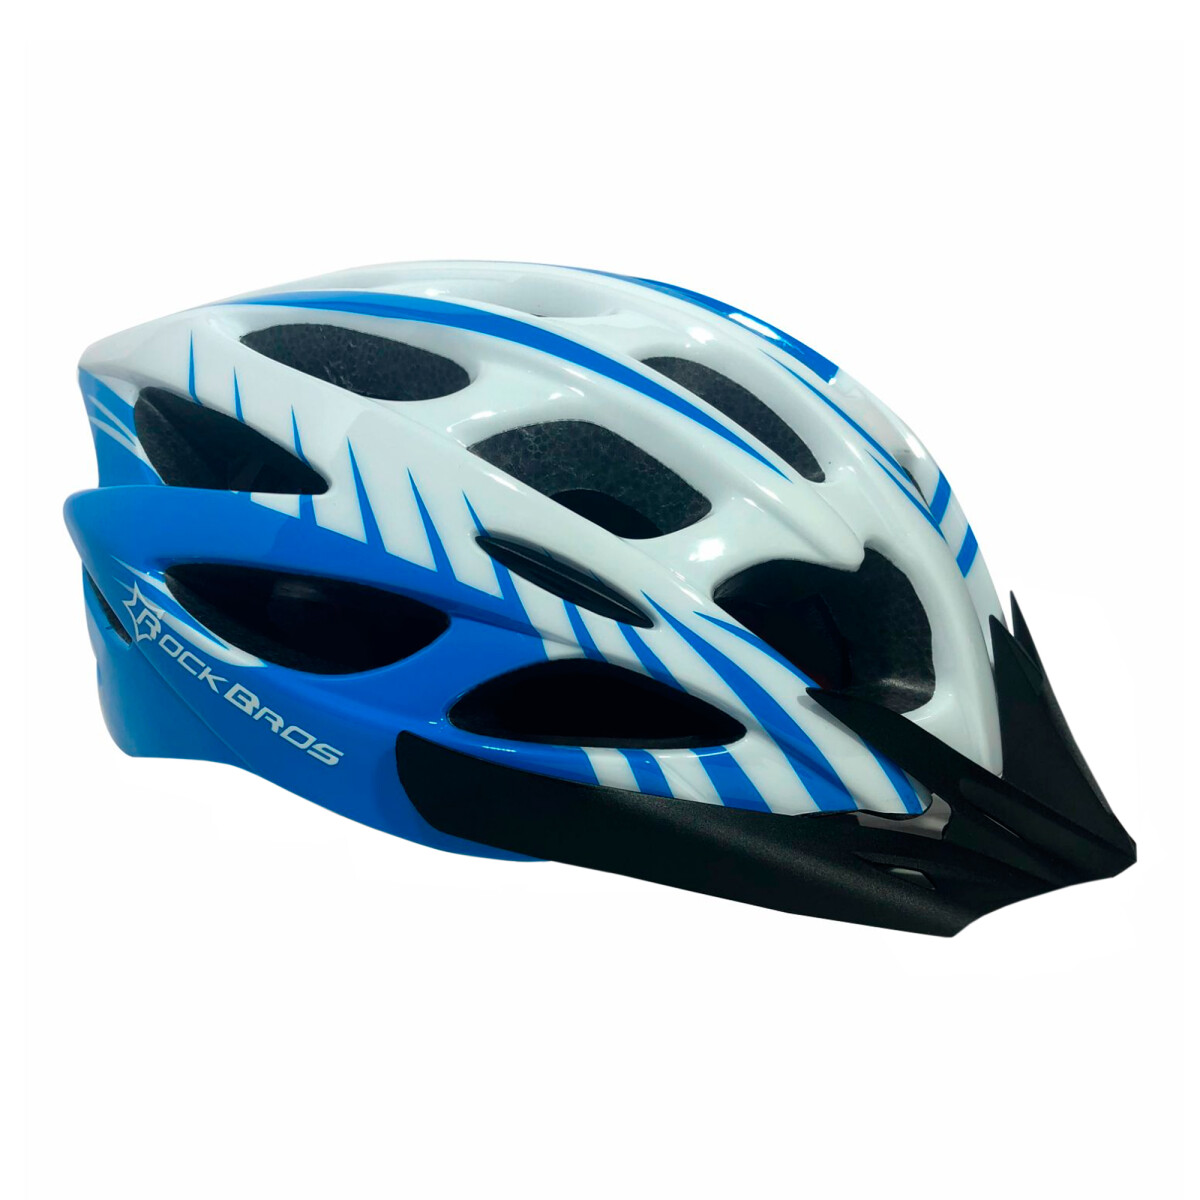 Rockbros Casco Helmet Blue/white 